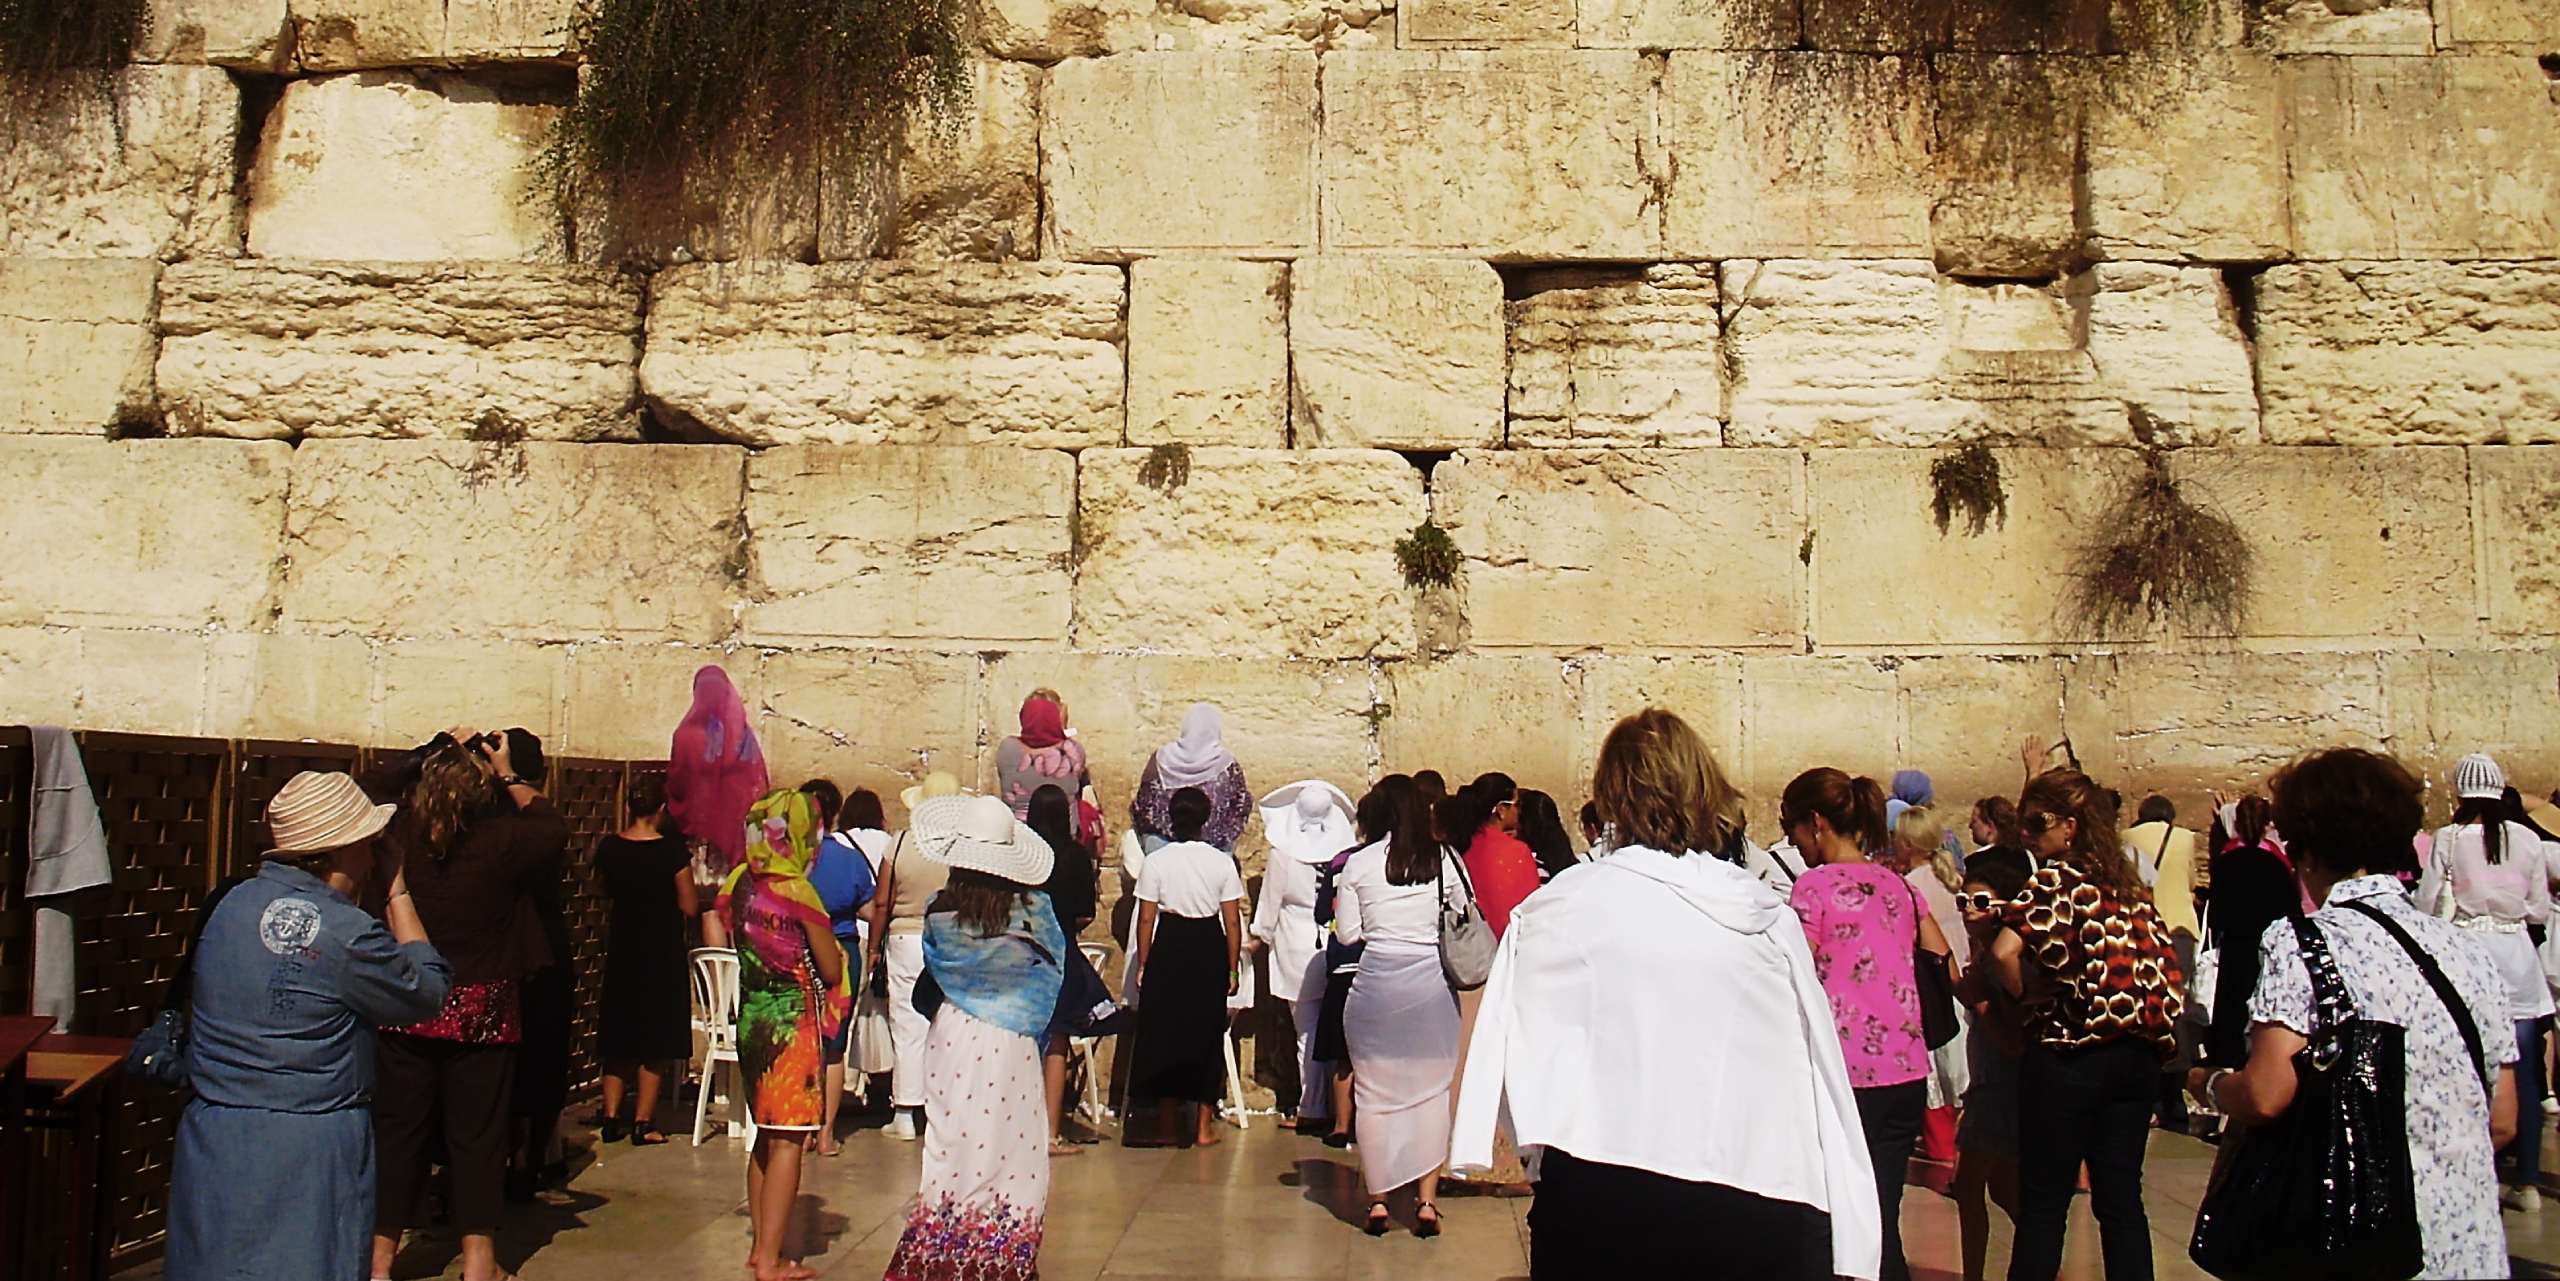 Yahudilerin Kutsal Mekanı: Ağlama Duvarı Hakkında 10 İlginç Bilgi